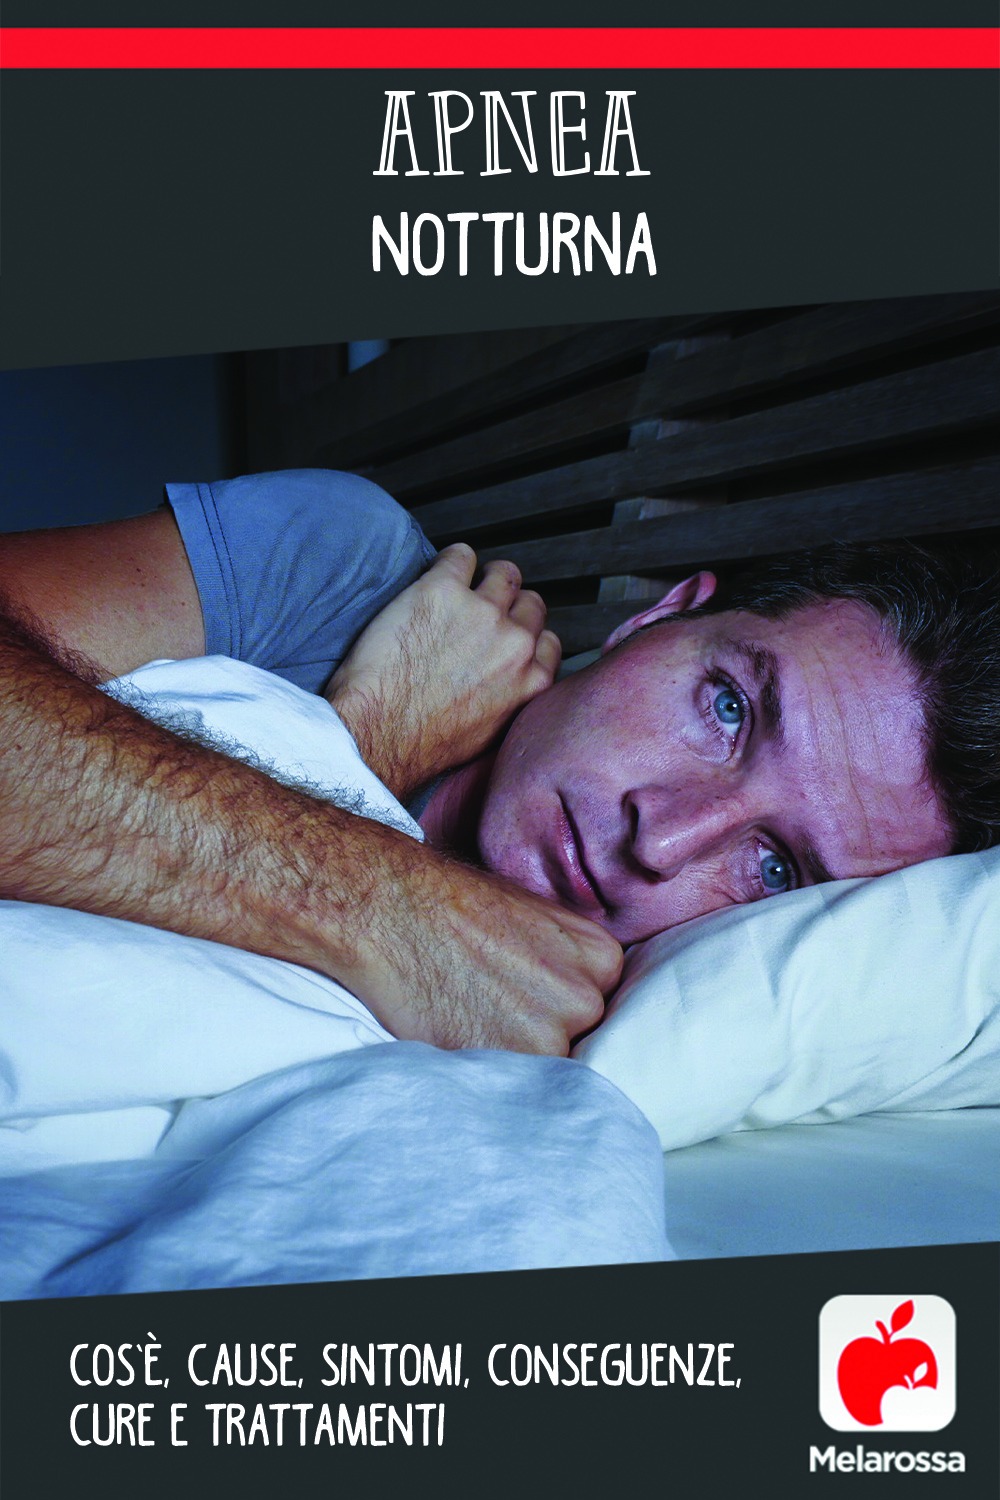 apnea notturna: cos'è, cause, sintomi e conseguenze, cure e trattamenti